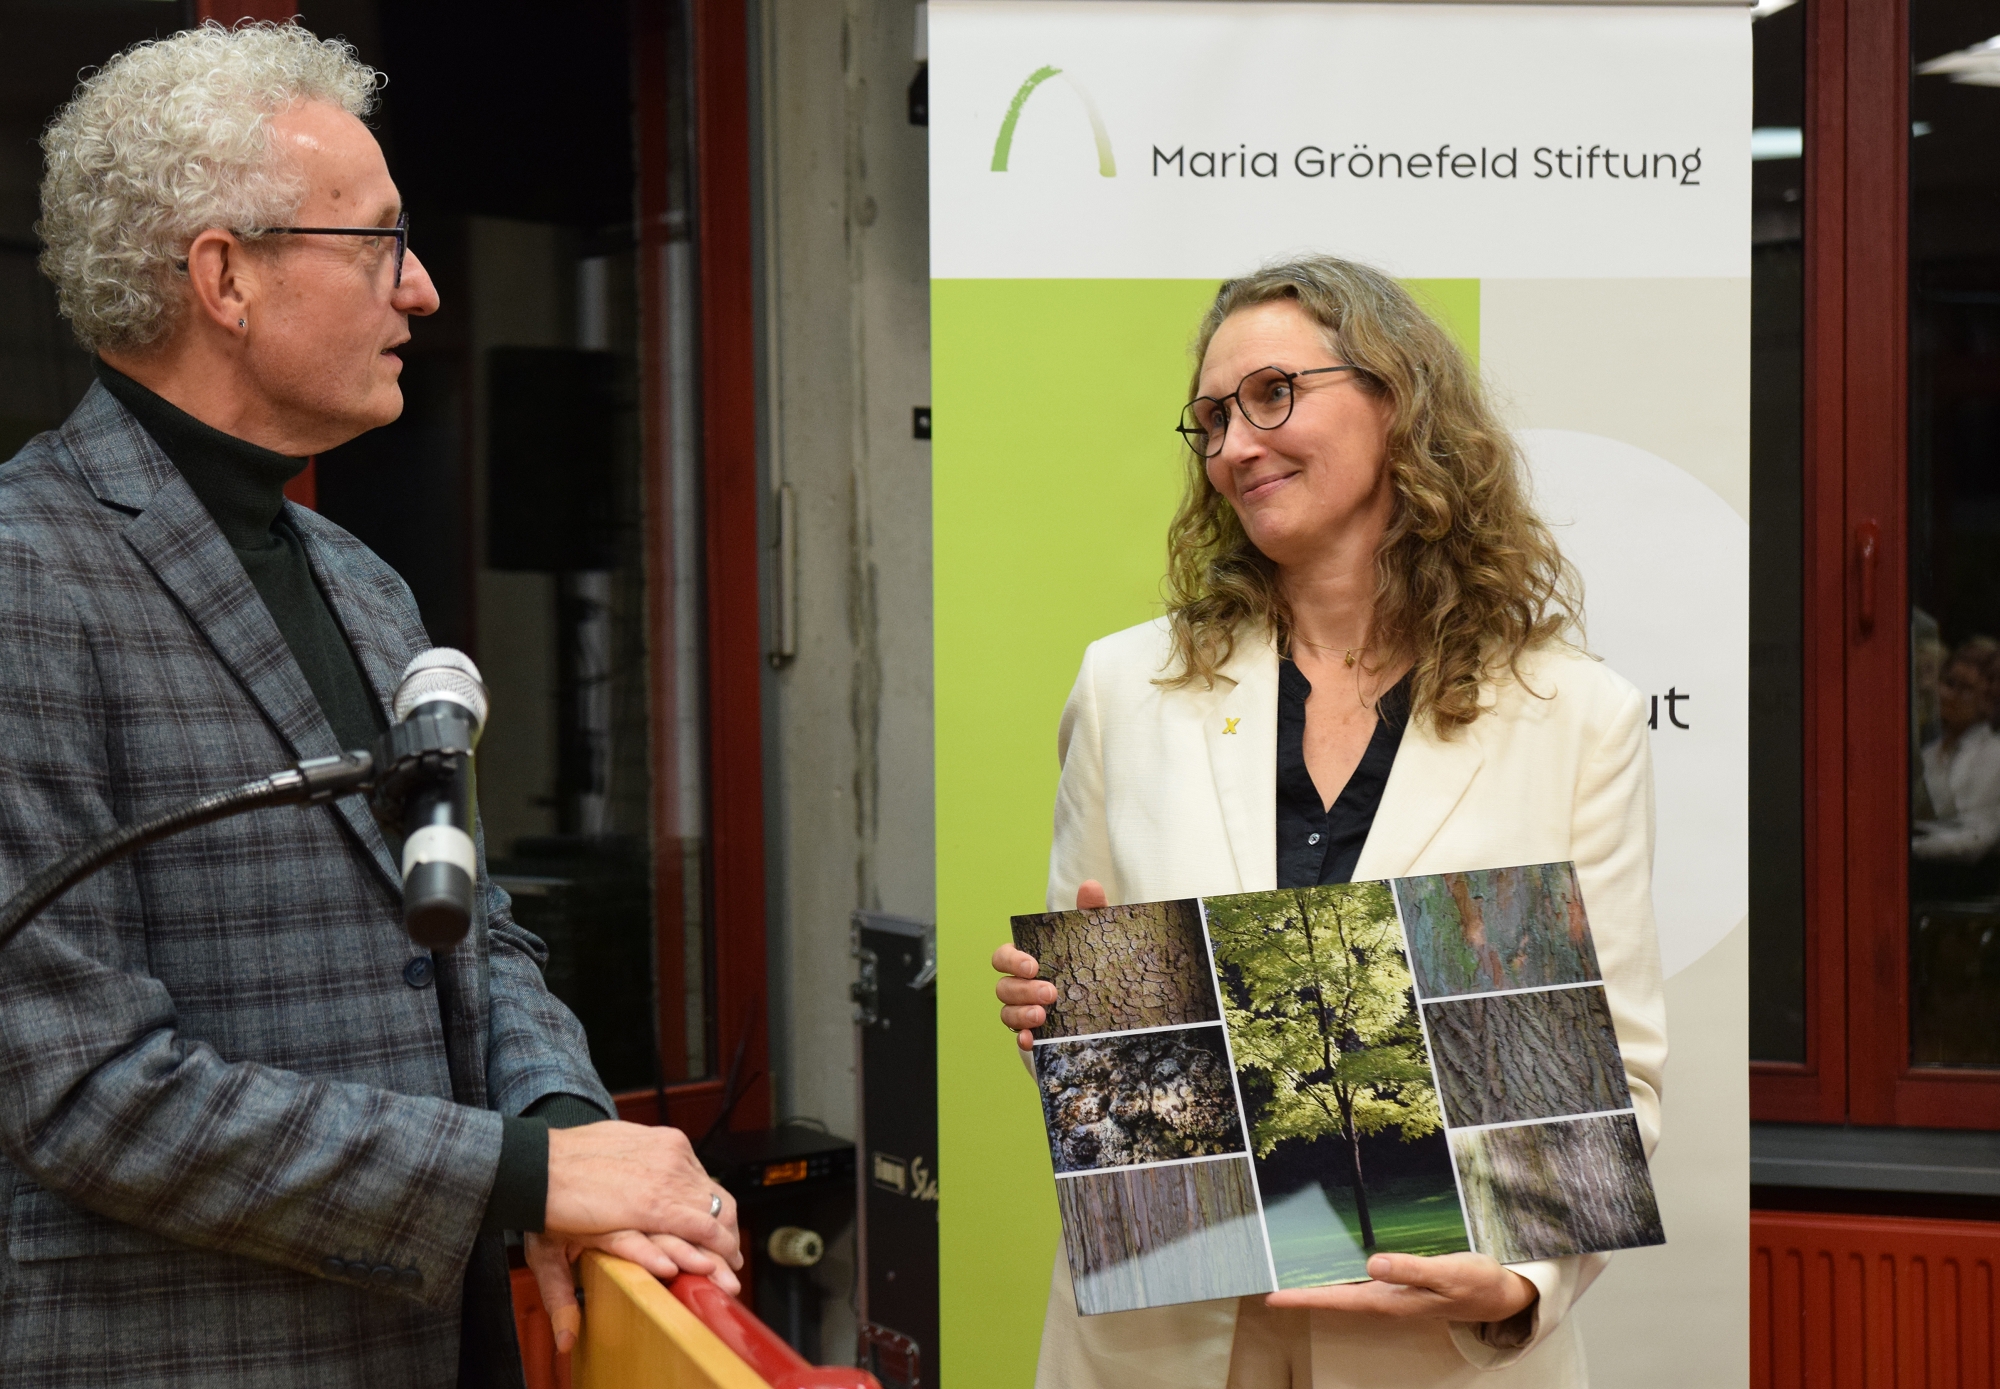 Antje Grothus bekam aus den Händen von Dr. Manfred Körber zunächst die offizielle Urkunde, in der ihr Eintreten für Klimagerechtigkeit gewürdigt wurde. Und dann erhielt sie eine kunstvolle Collage von Baumbildern des Aachener Fotografen Dieter Kaspari. (c) Thomas Hohenschue